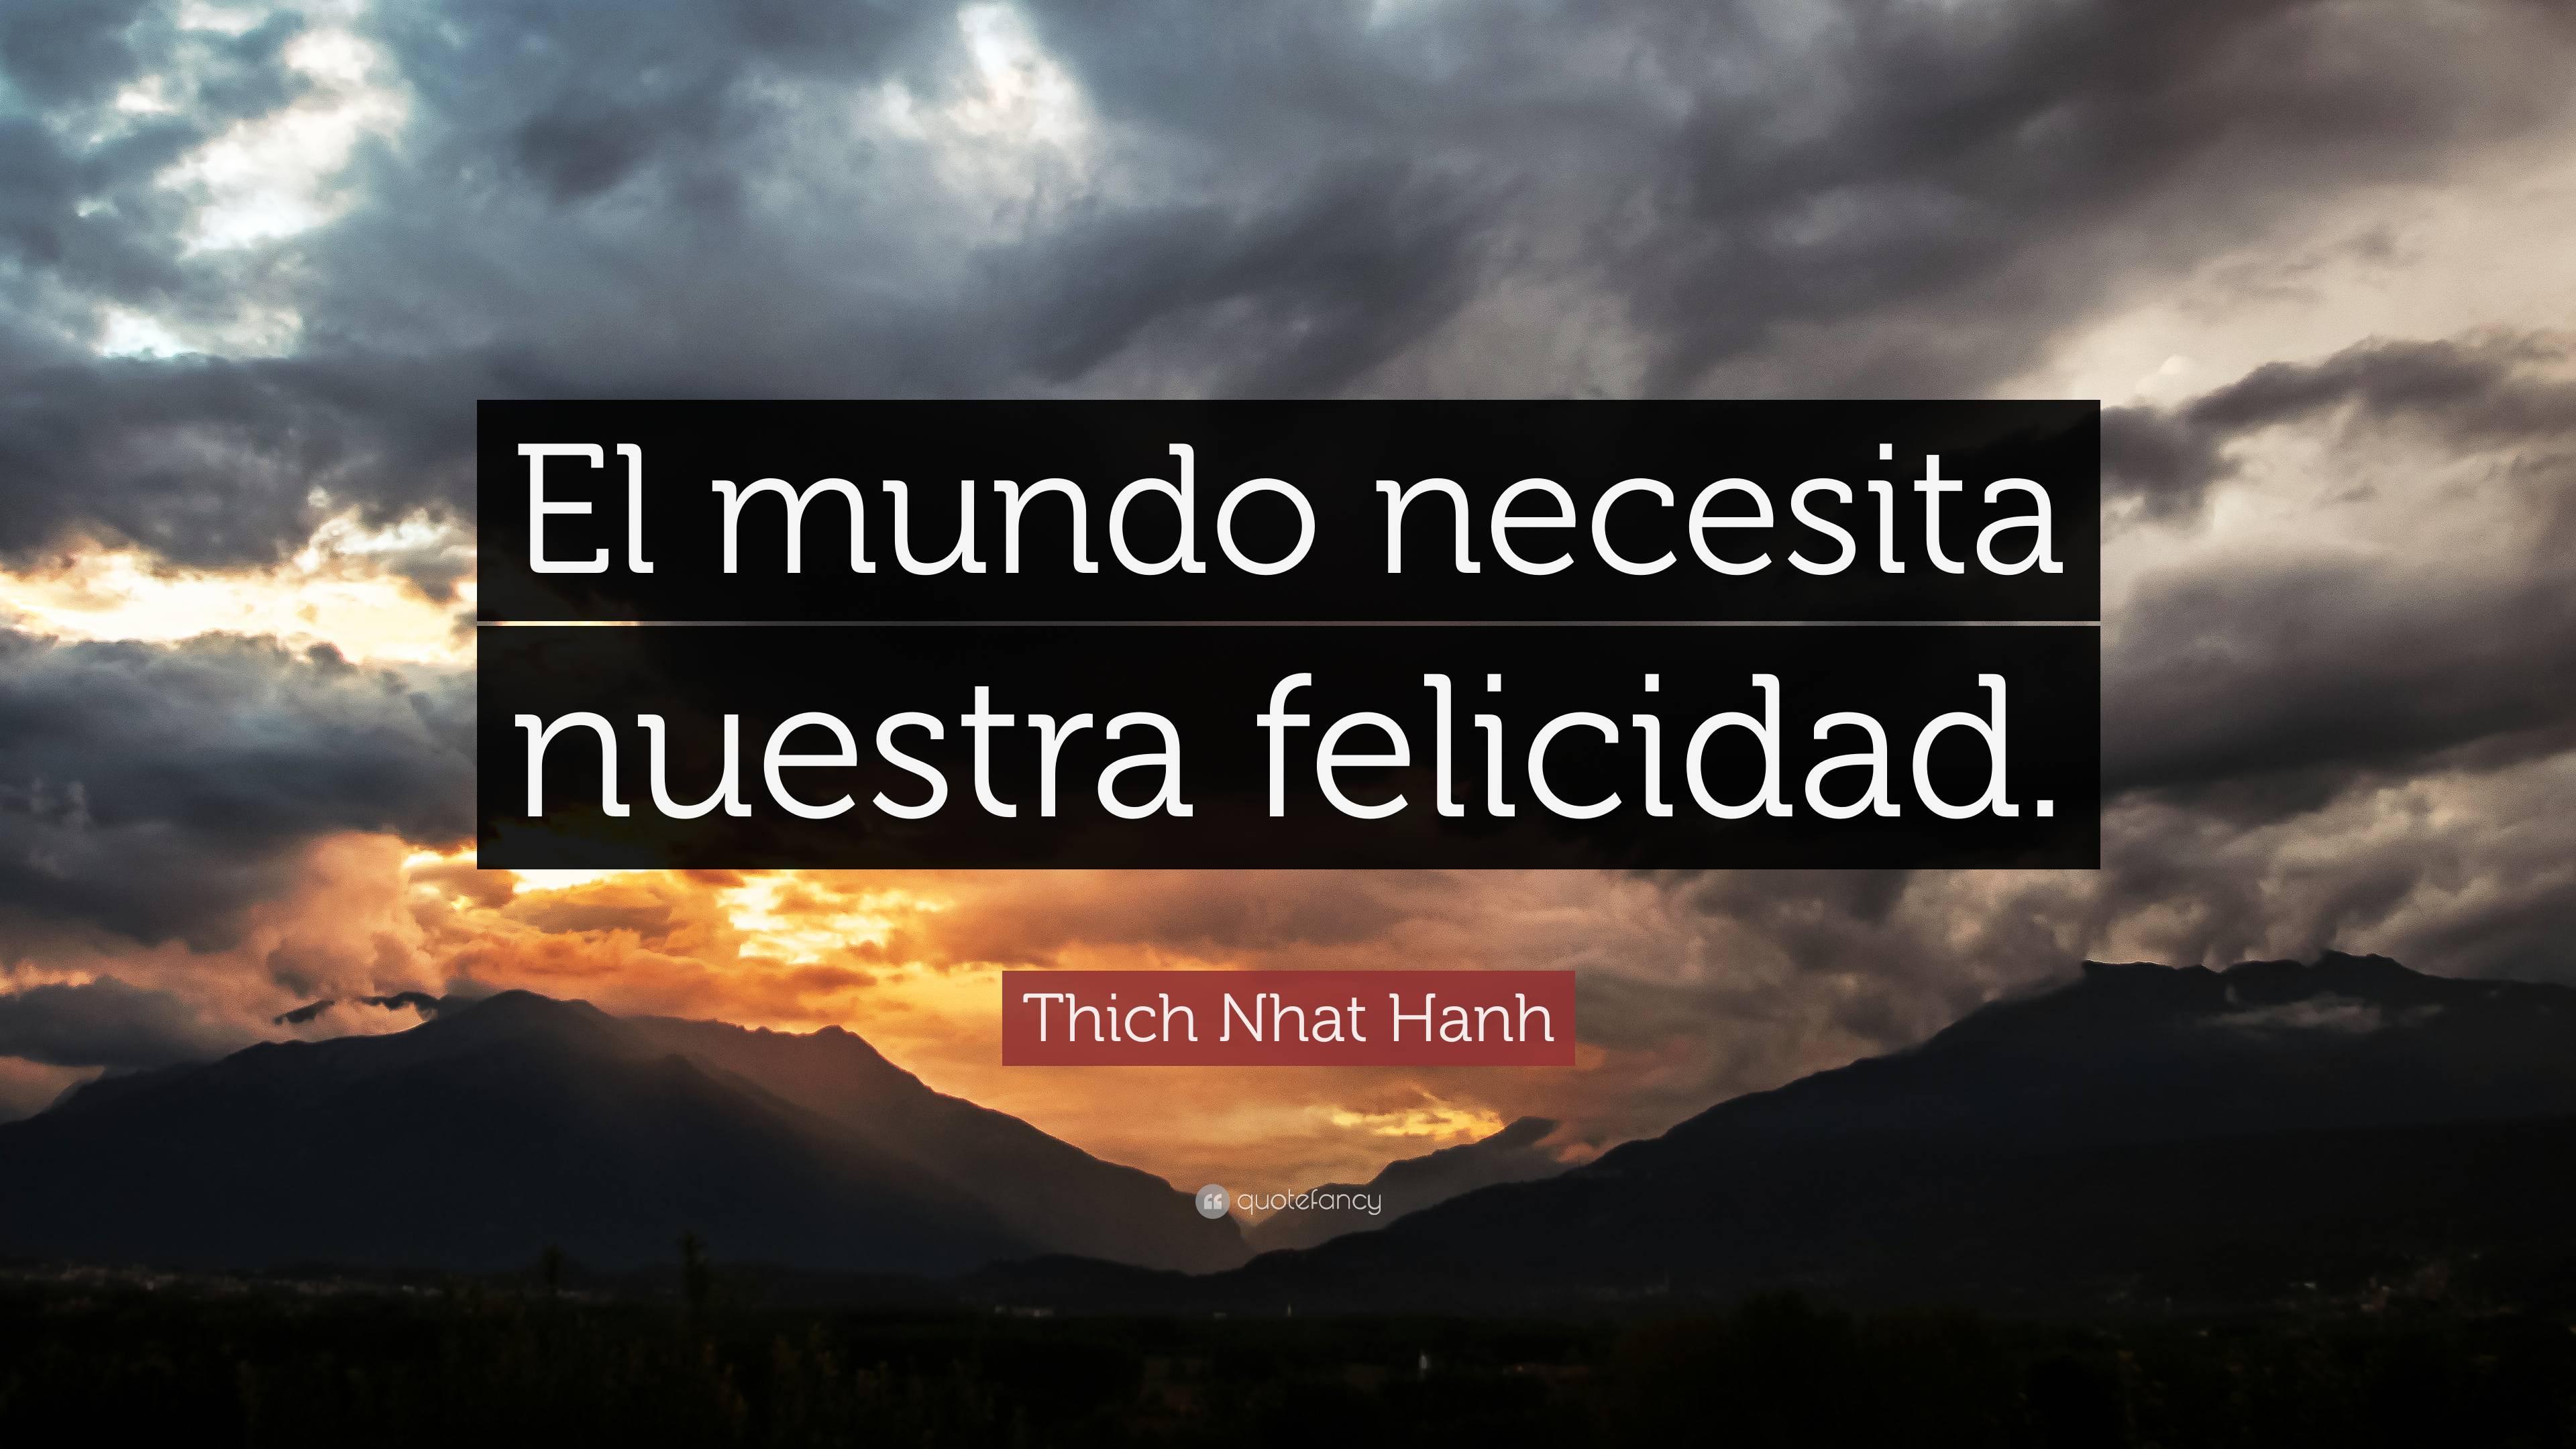 Thich Nhat Hanh Quote: “El mundo necesita nuestra felicidad.”